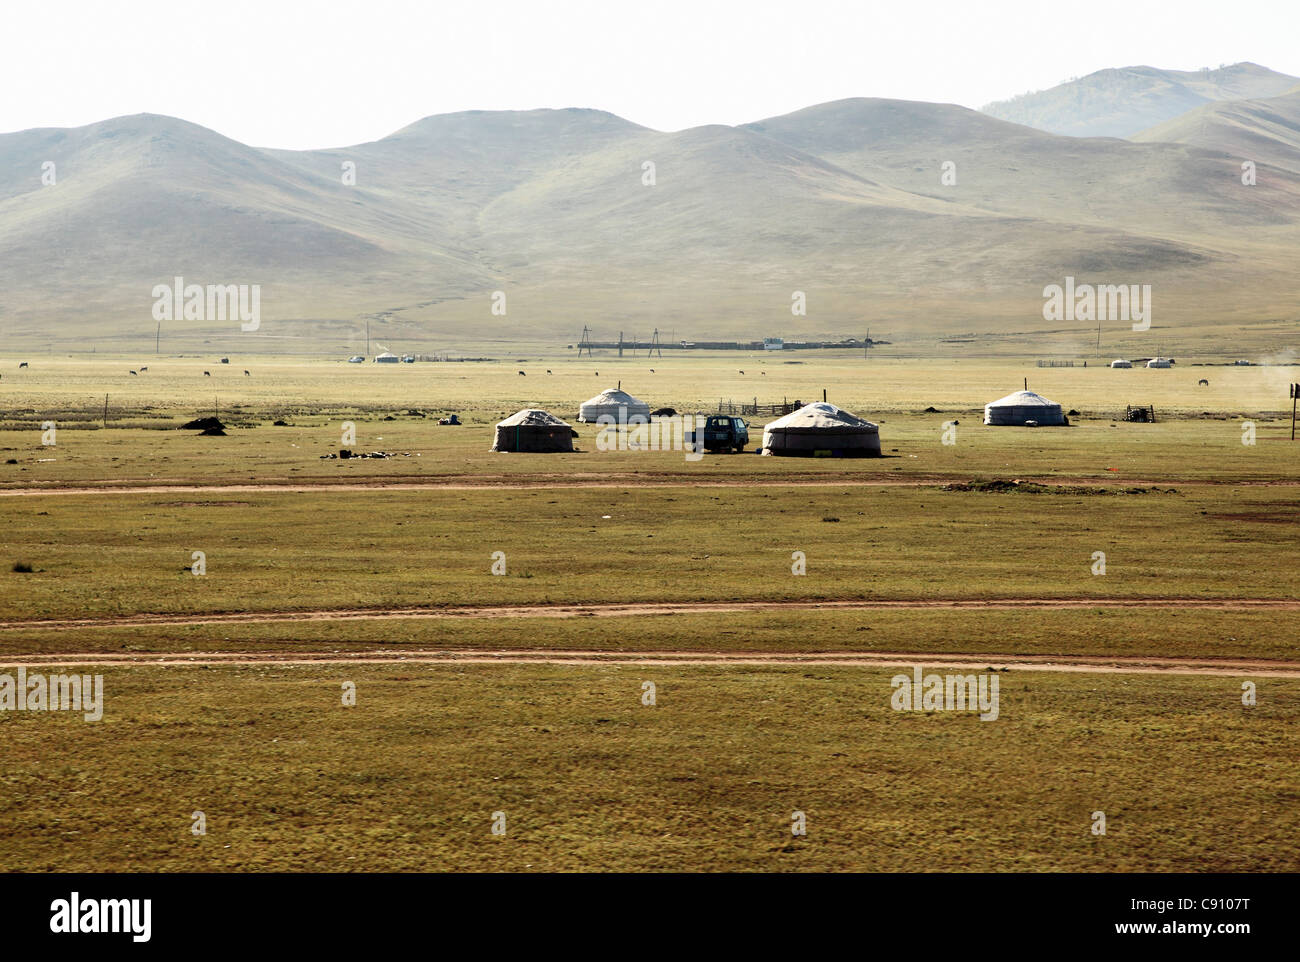 Die Landschaft der nördlichen Mongolei ist geprägt durch Steppen oder gewellte Bergketten. Auf den Ebenen der nomadischen Stämme Stockfoto